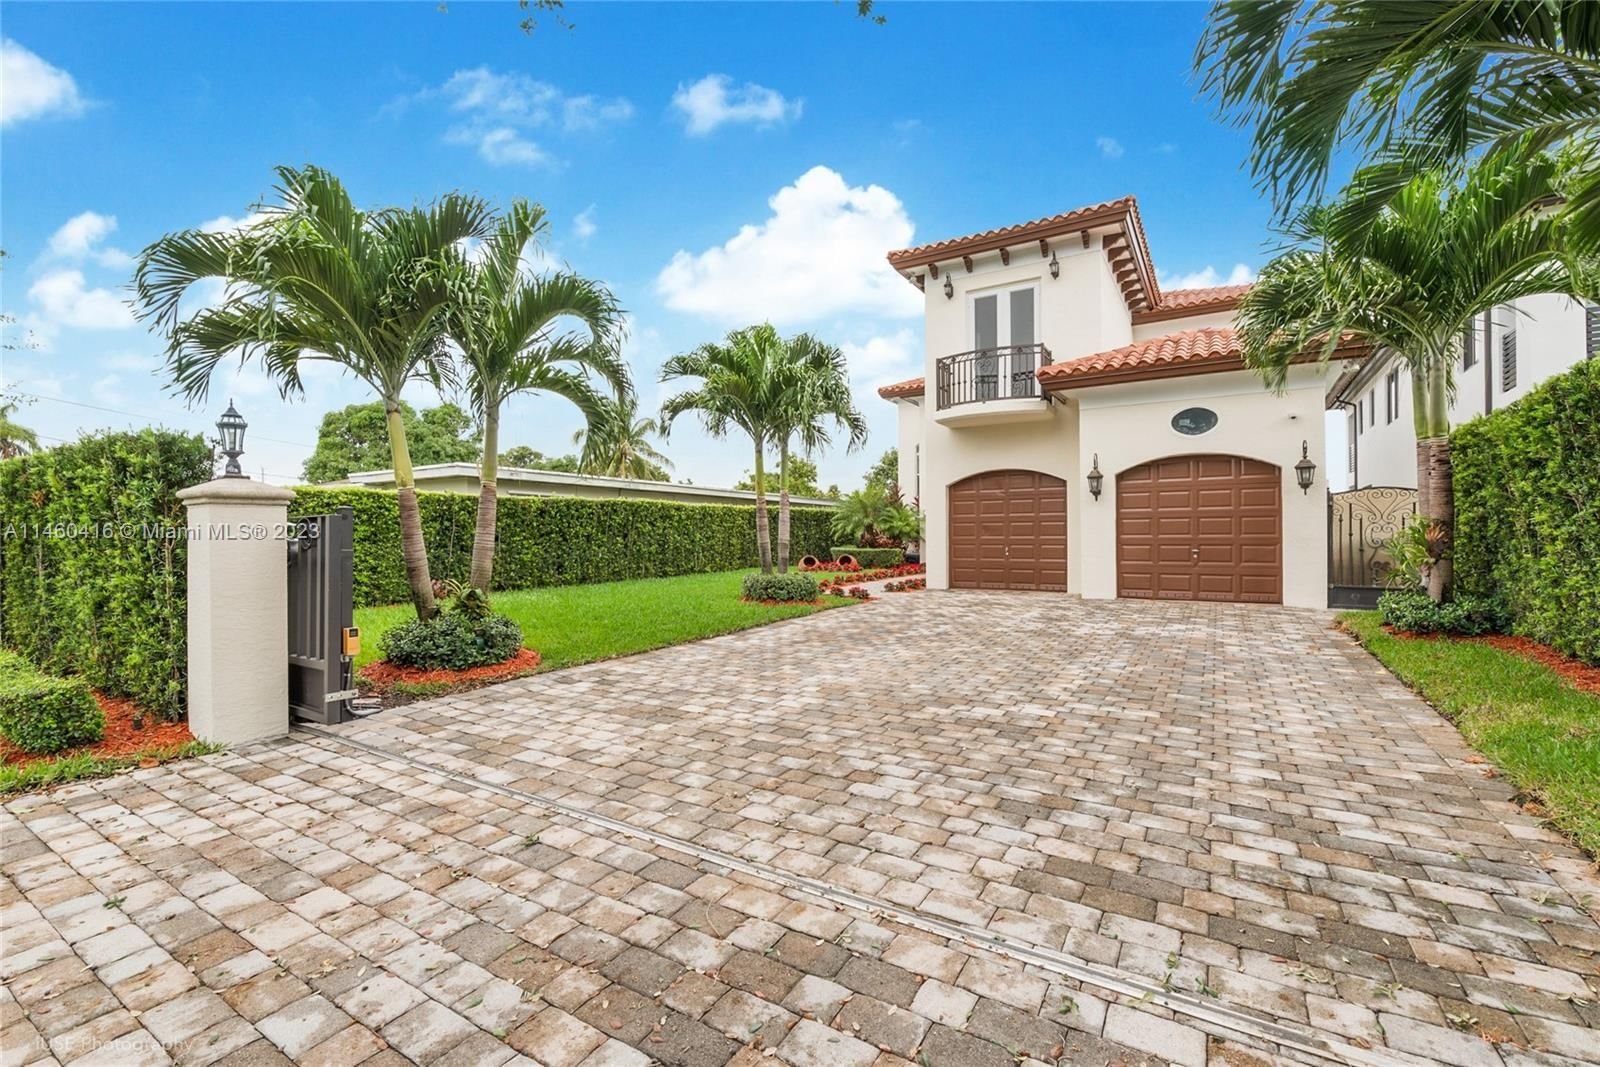 Real estate property located at 6429 33 ST, Miami-Dade County, CORAL VILLAS REV, Miami, FL